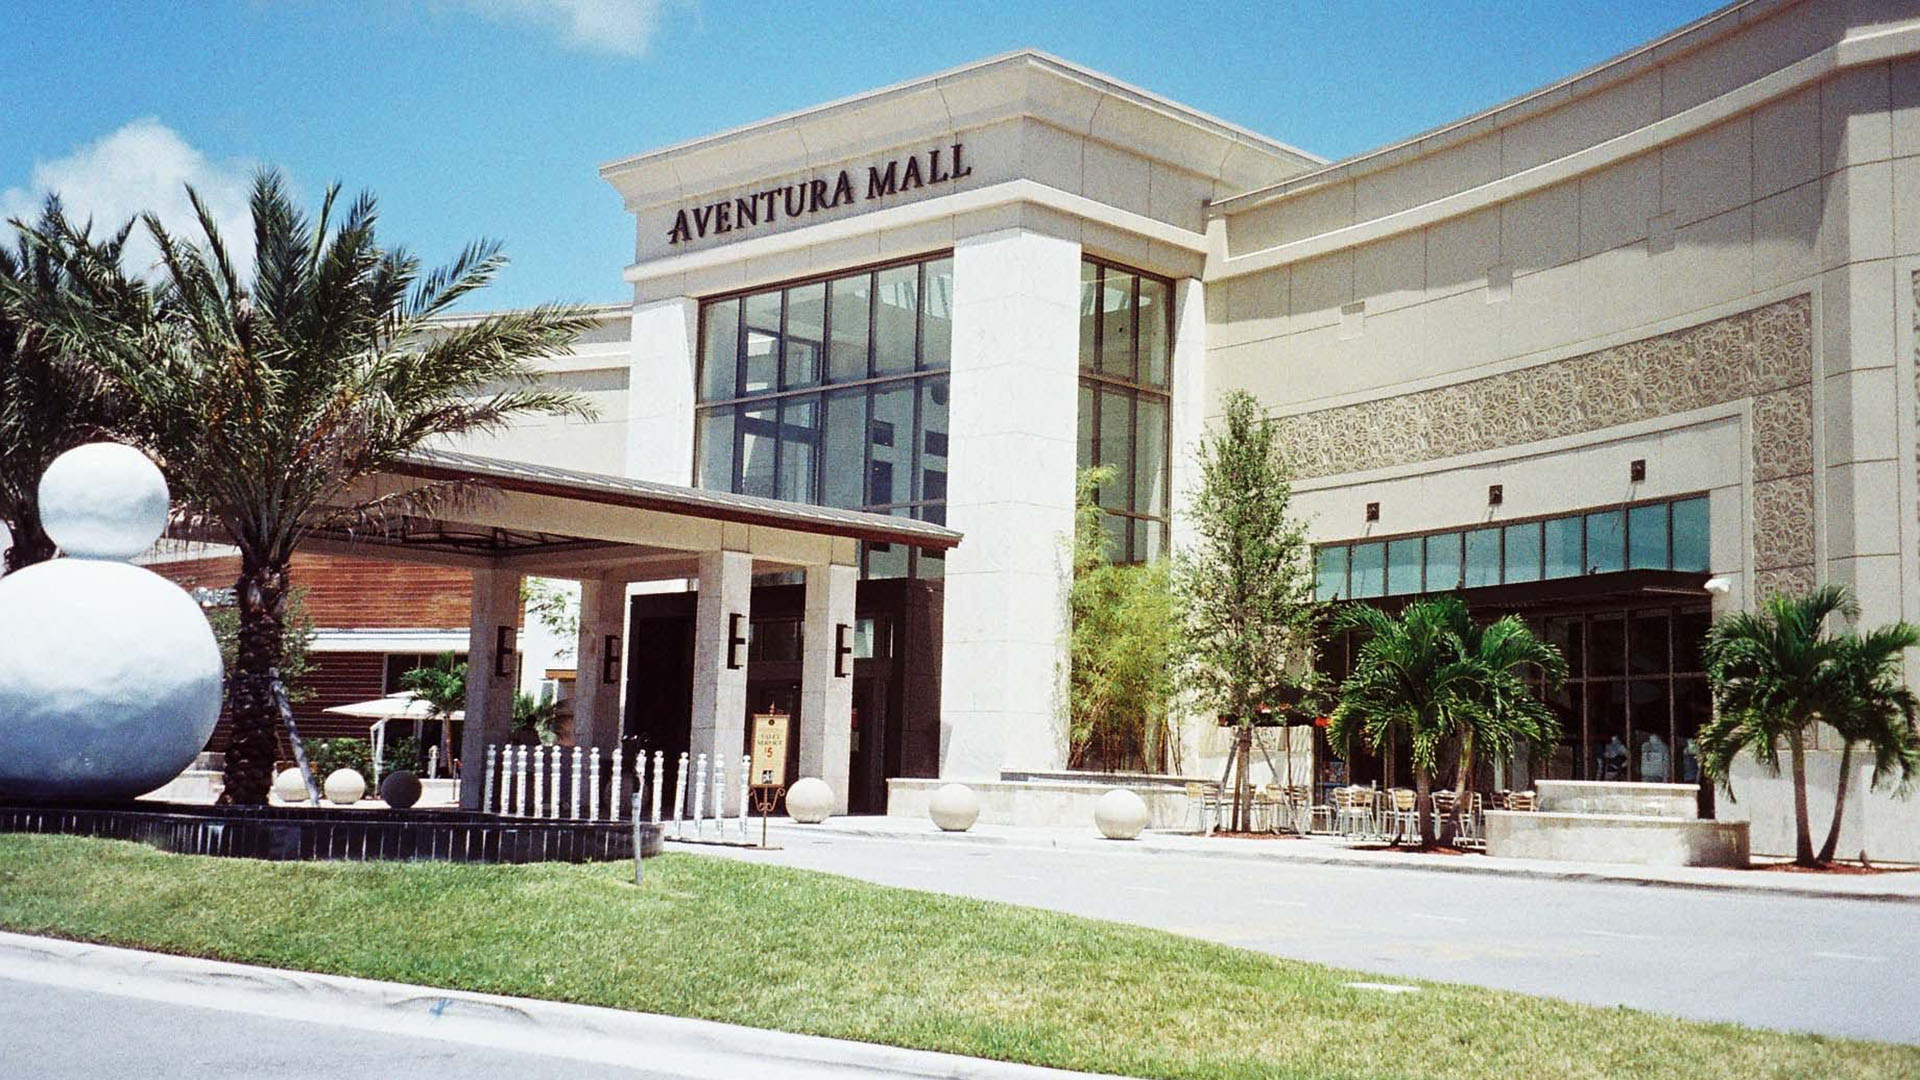 Lujo, amplitud y excelentes restaurantes son algunas de las atracciones que ofrece el mall de Aventura. 